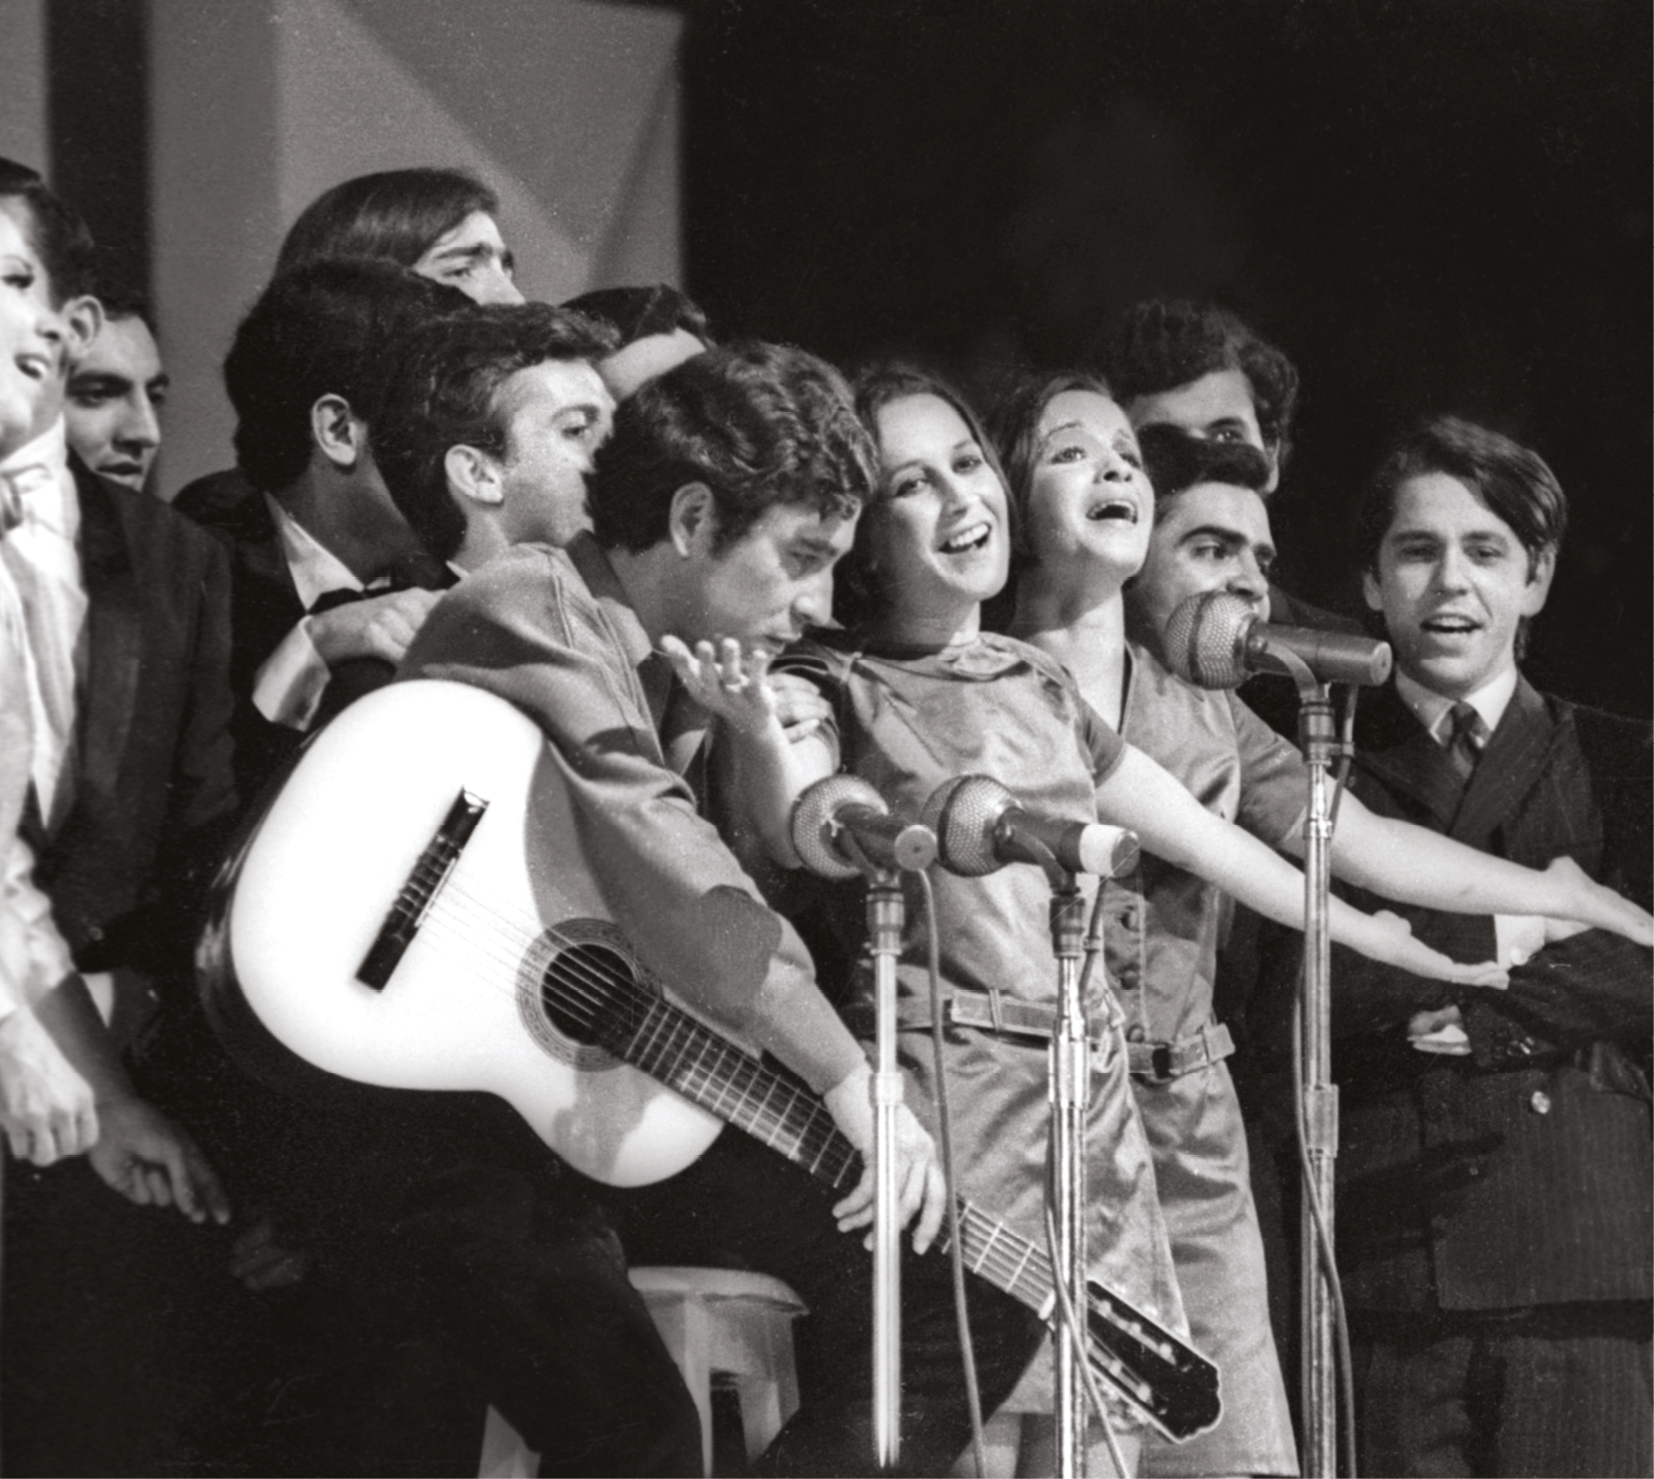 Fotografia em preto e branco. Homens e mulheres cantam e tocam juntos em um palco. Há homens e mulheres, que dividem três microfones. Destaque para um dos músicos que segura um violão e tem a cabeça baixa.